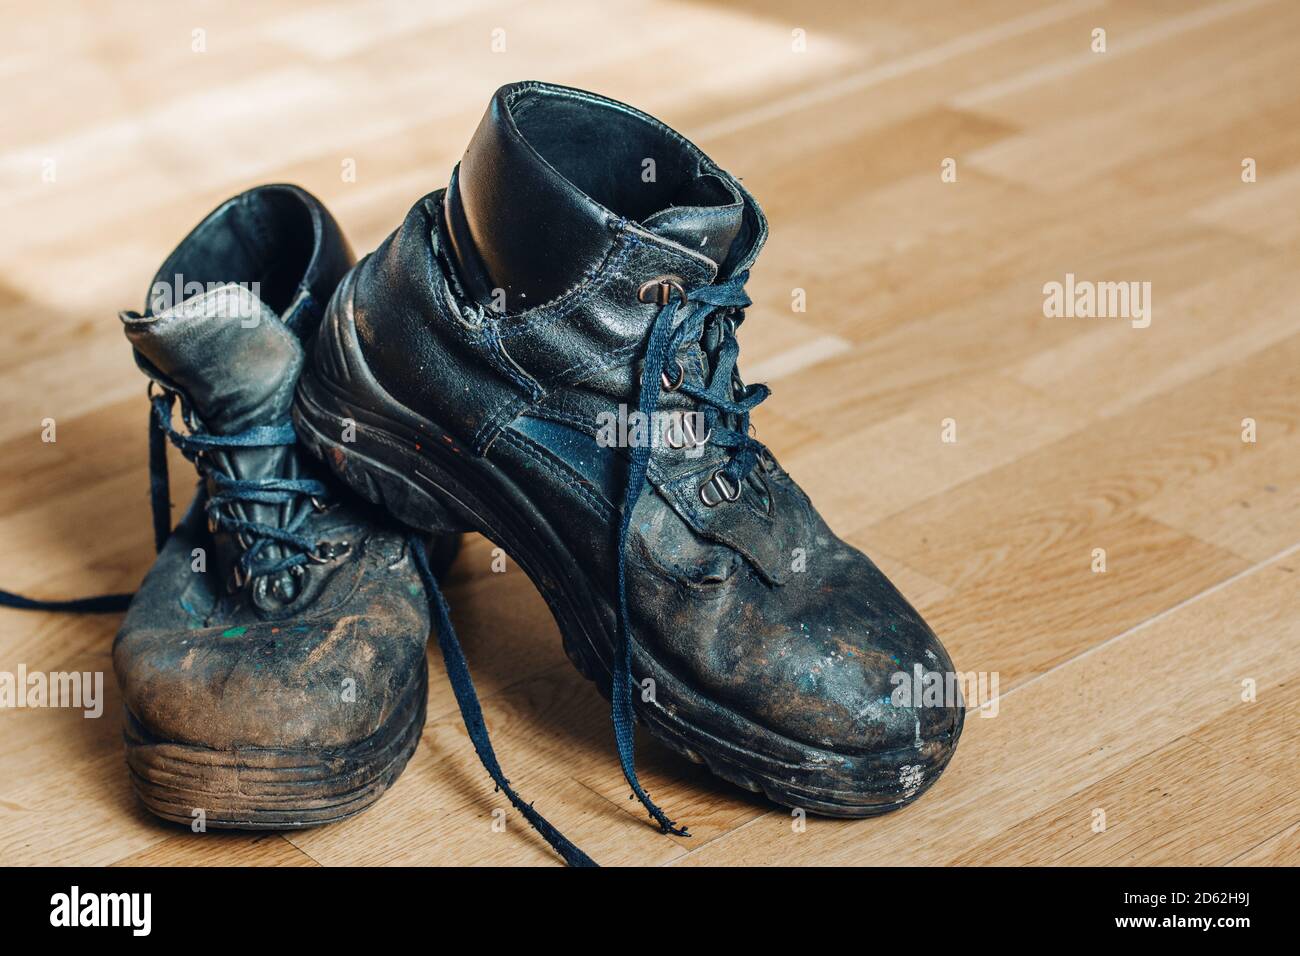 Alte abgenutzte Arbeitsschuhe. Schuhe, die repariert oder ersetzt werden  müssen Stockfotografie - Alamy